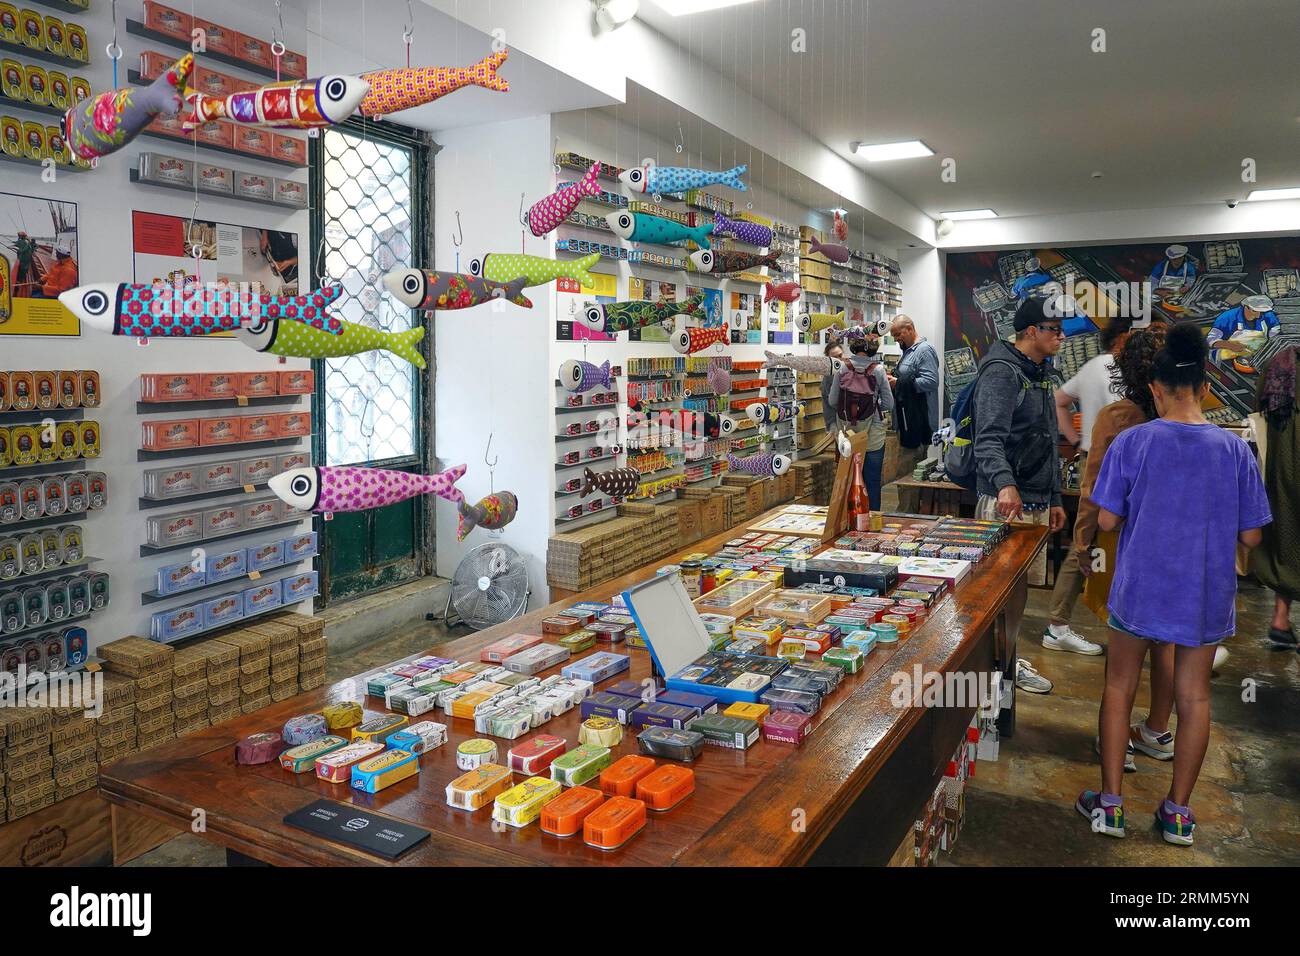 Portugal, Lisbonne, Loja das Conservas, un projet parrainé par l'Association nationale de l'industrie du poisson en conserve, est un magasin qui rassemble des produits f Banque D'Images